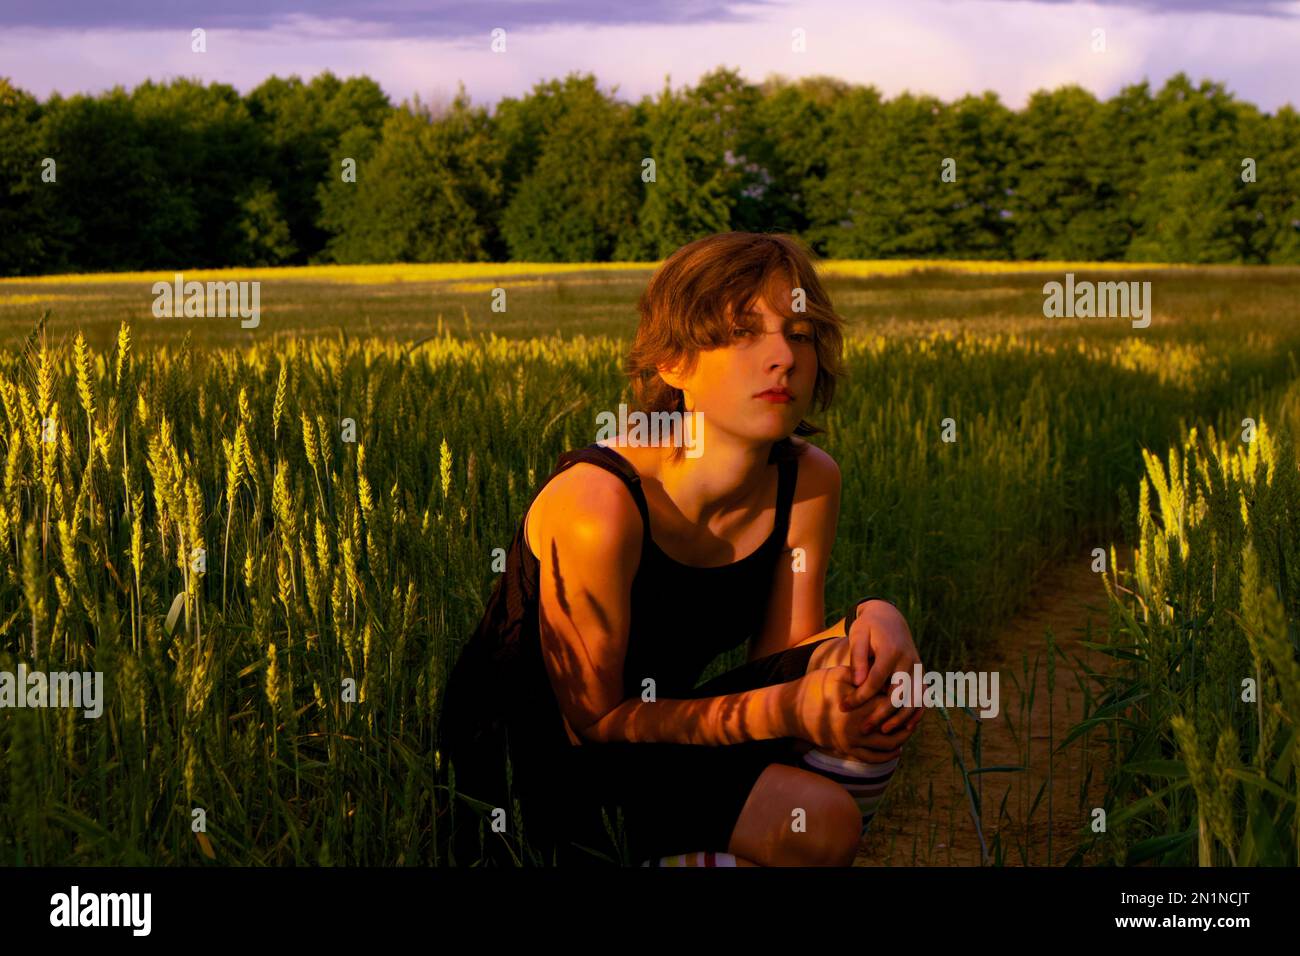 Ein Teenager sitzt auf dem Feld inmitten reifer Körner, die ein blumiges, tätowierähnliches Muster auf ihren Arm werfen. Stockfoto